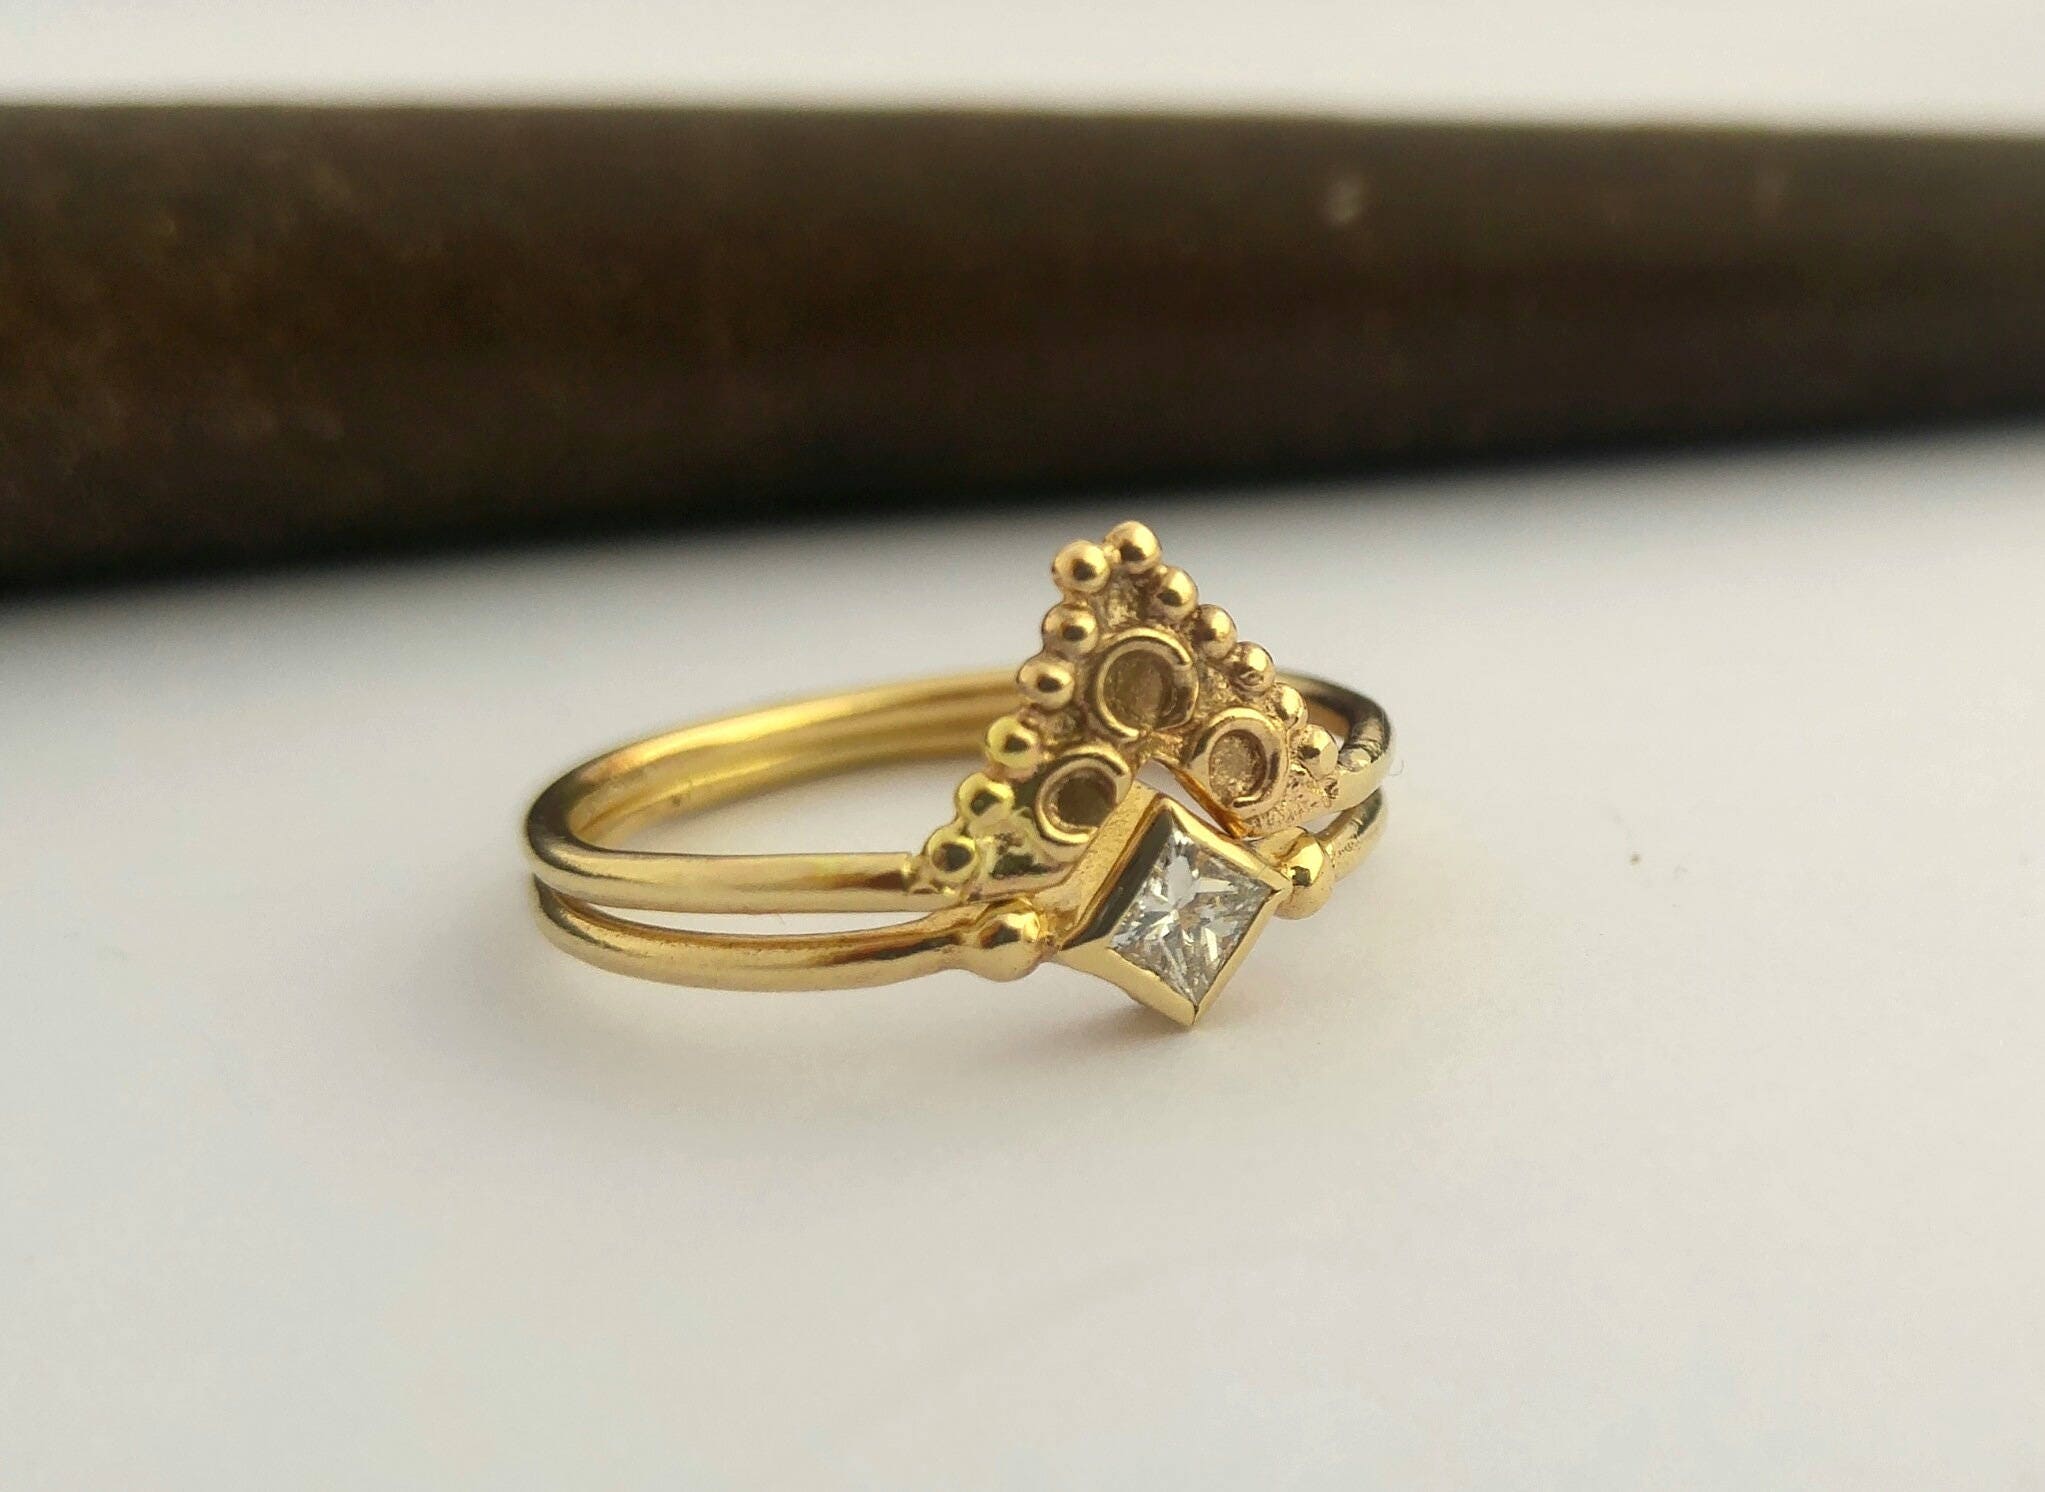 22K Gold 'Tortoise' Ring For Men With Cz - 235-GR6272 in 6.000 Grams